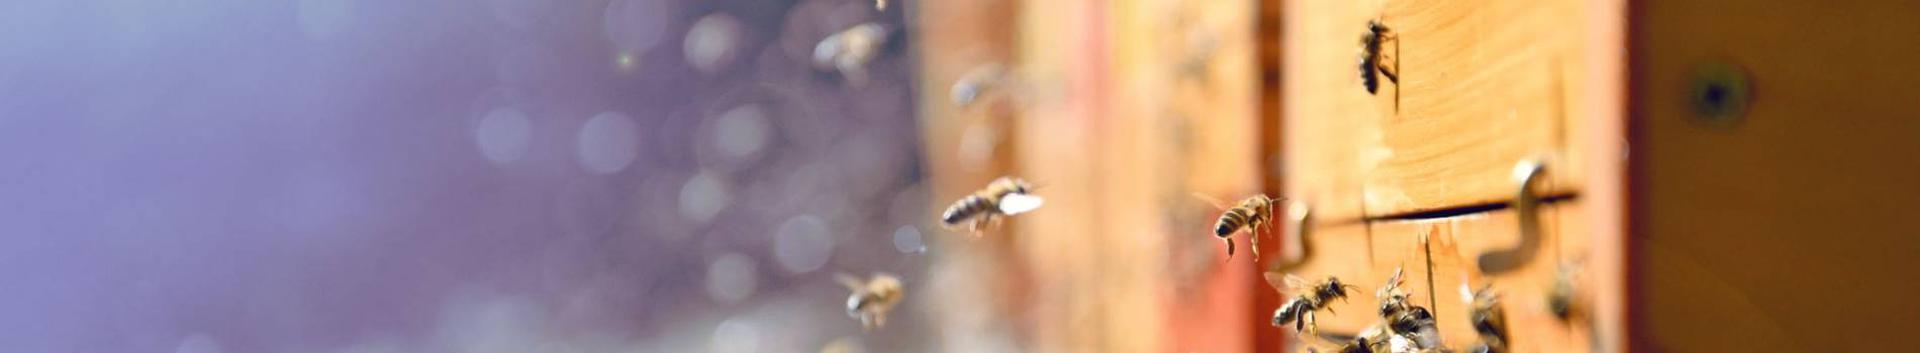 OÜ TõllaMesi on asutatud märts 2018 ja tegeleb mesindusega.